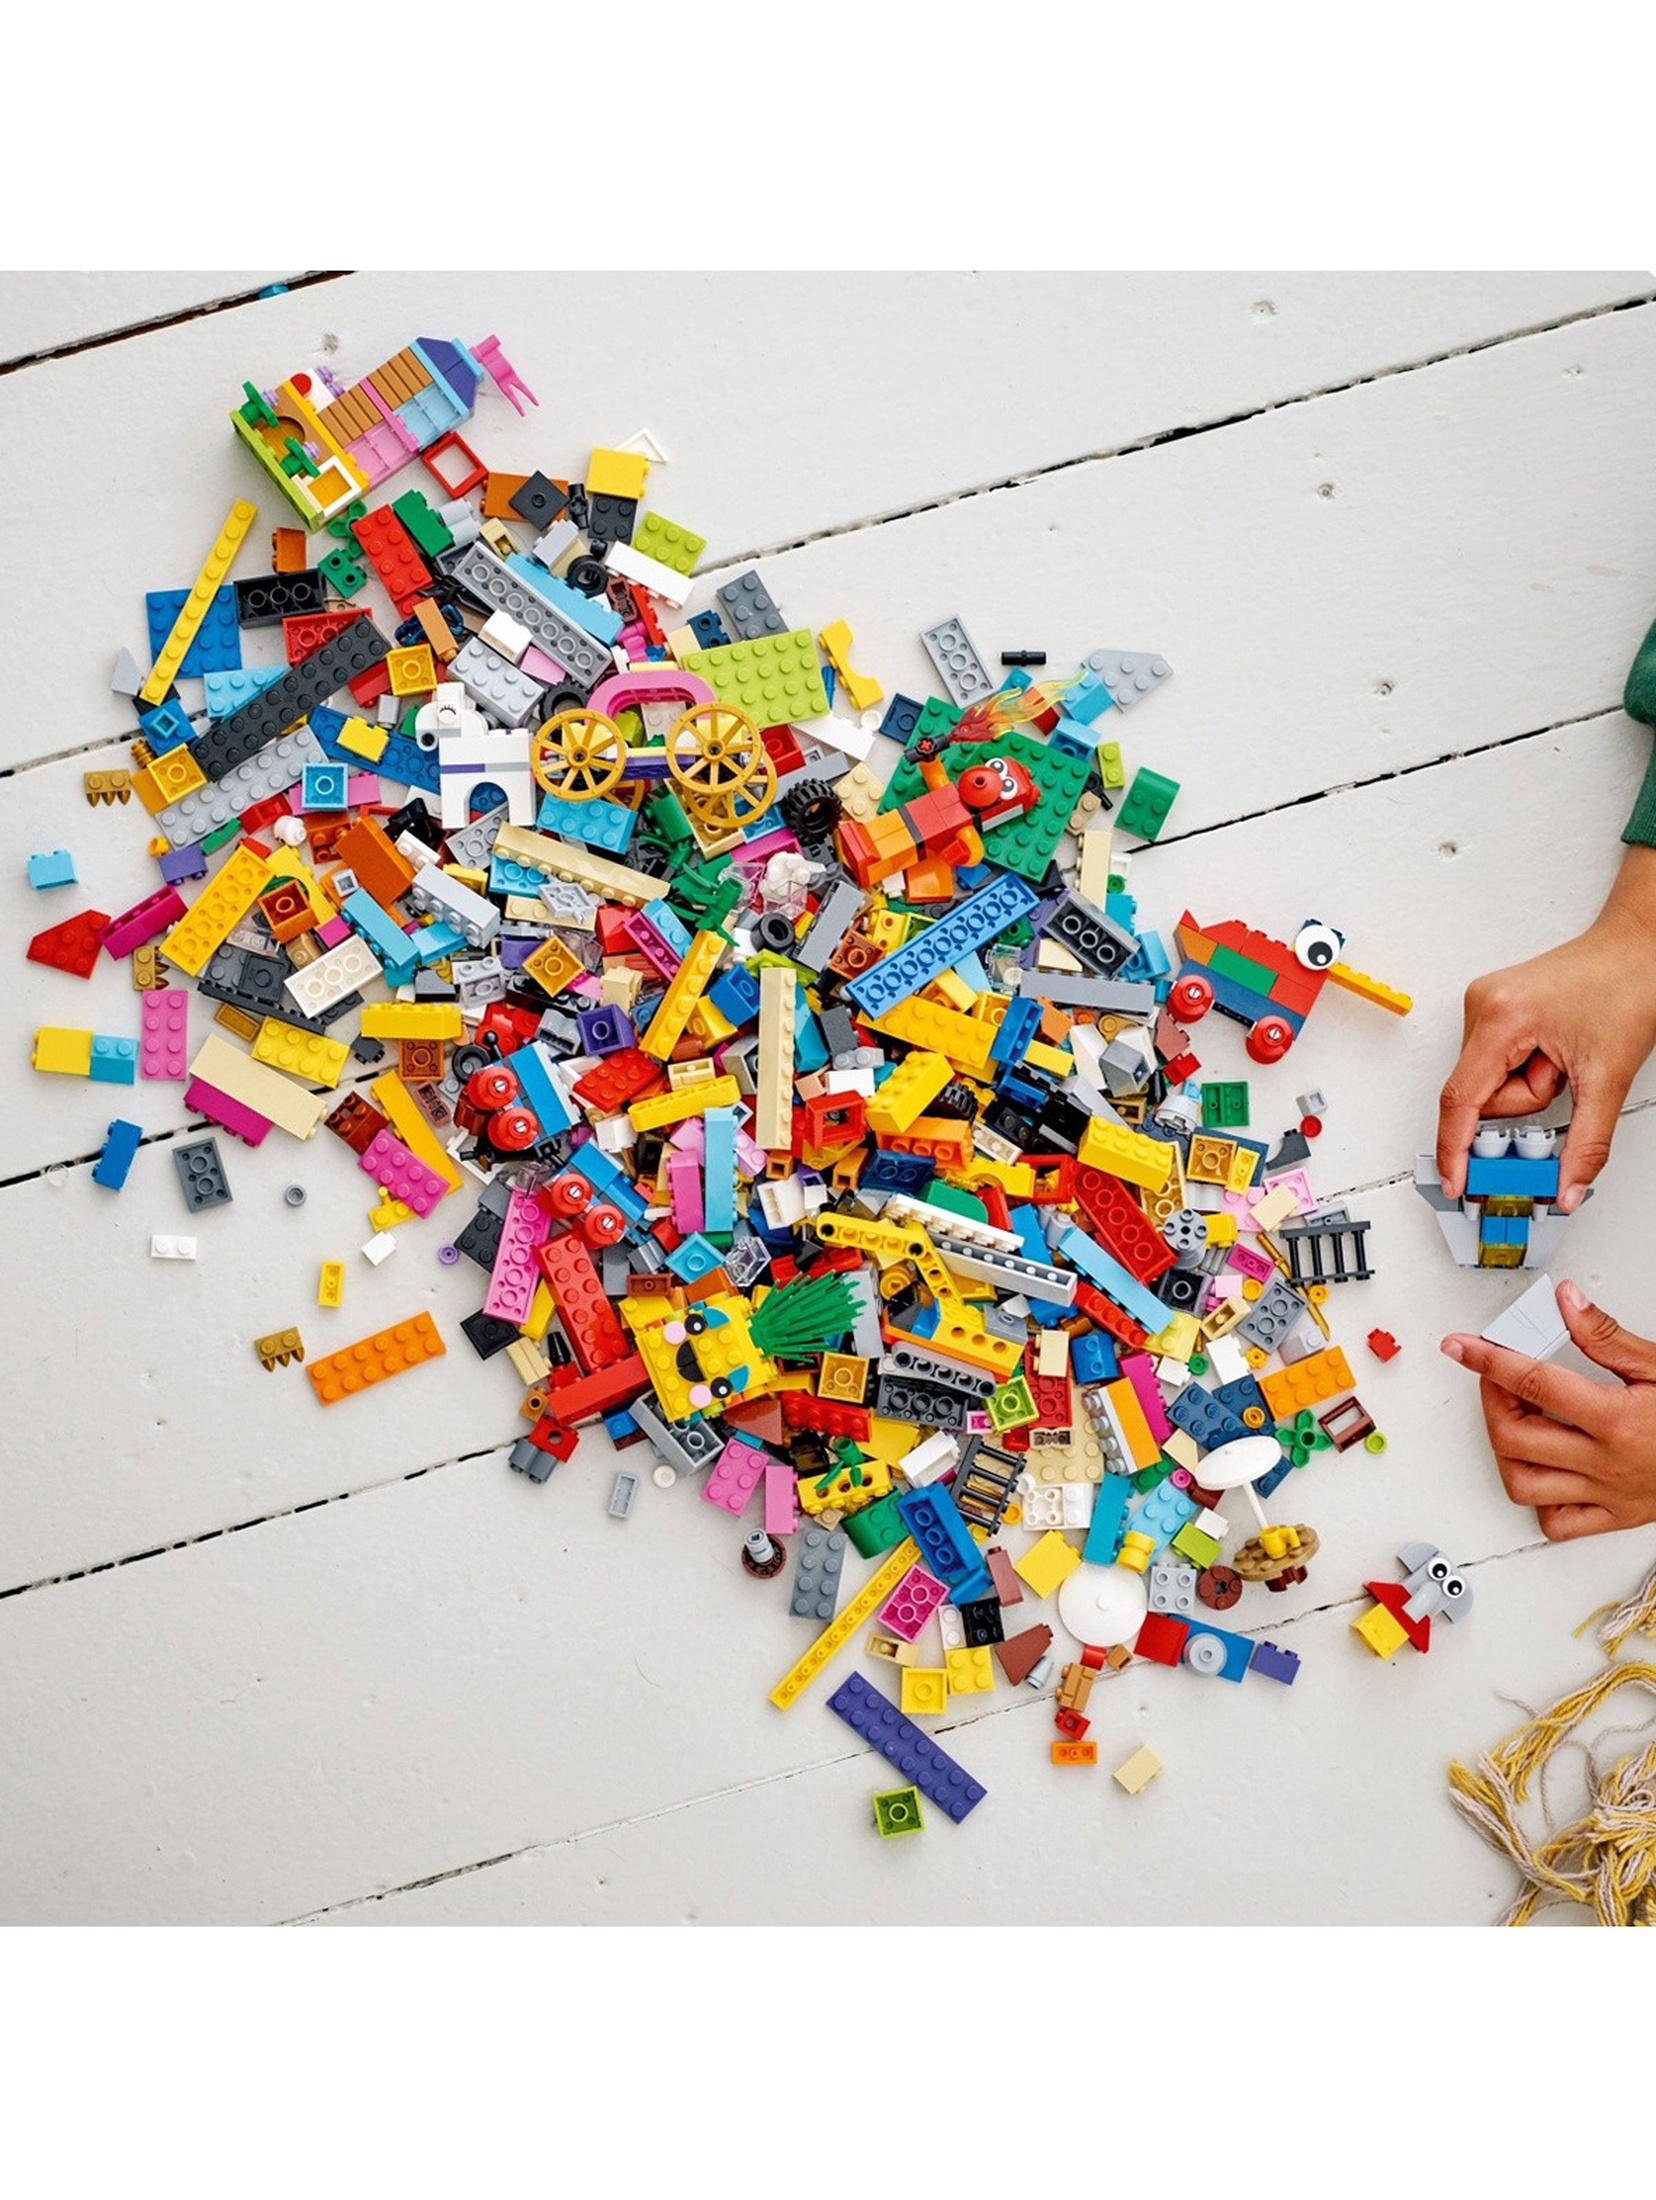 LEGO Classic - 90 lat zabawy 11021 - 1100 elementów, wiek 5+